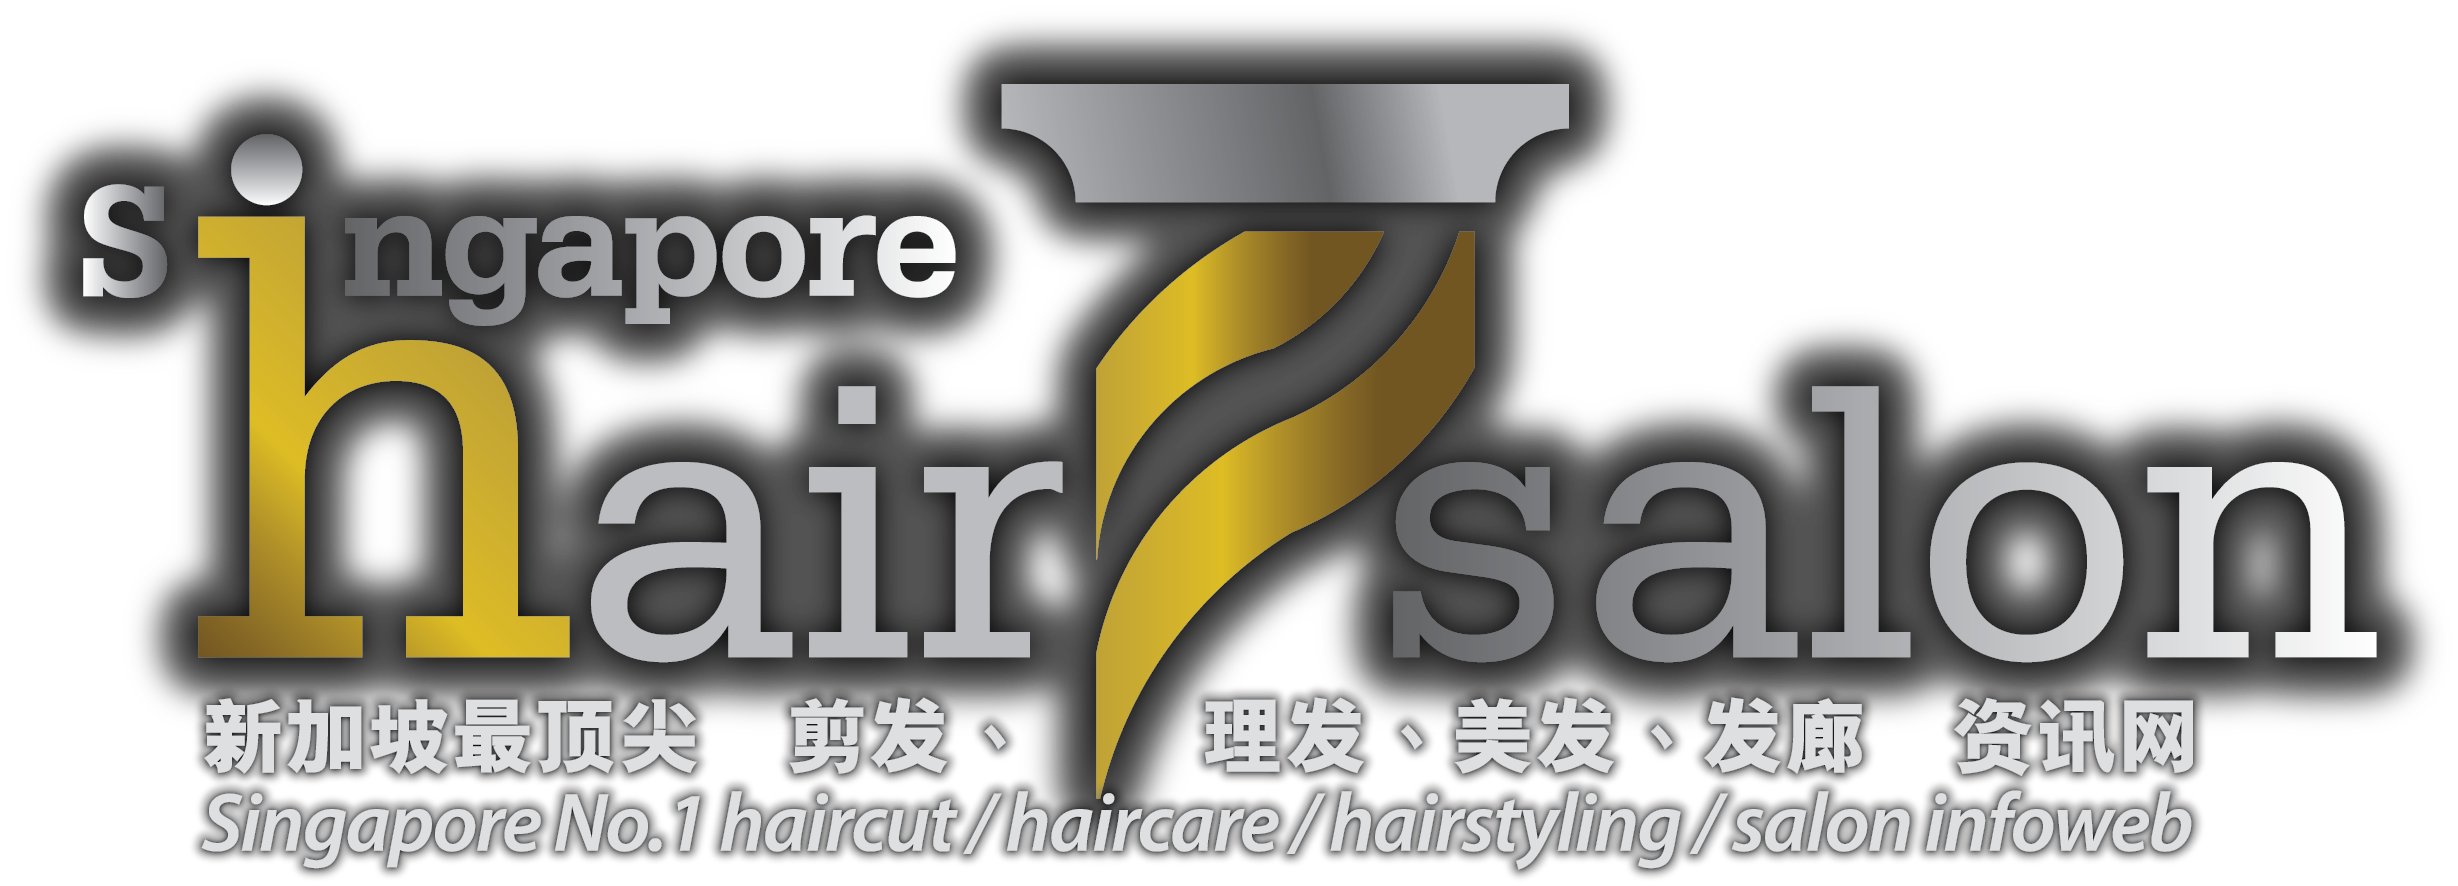 新加坡美髮网 Singapore Hair Salon